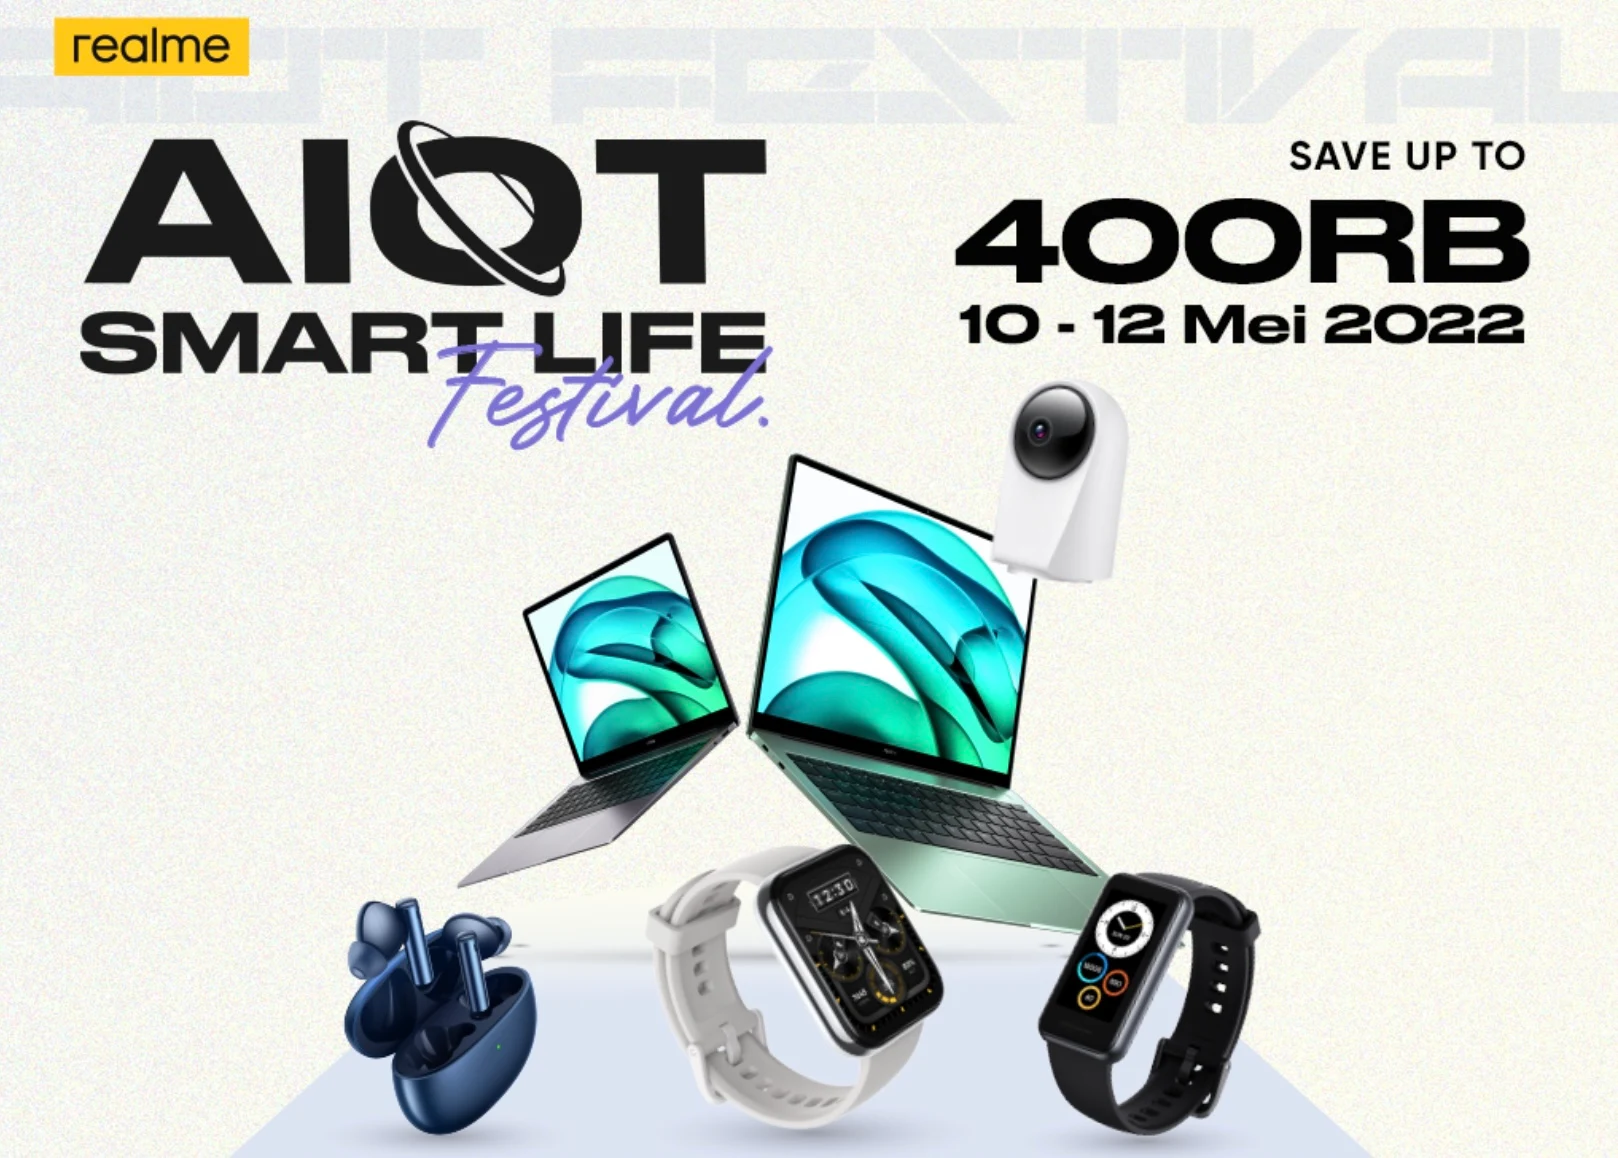 Realme Gelar AIoT Smart Life Festival, Tawarkan Diskon Hingga 400 Ribu